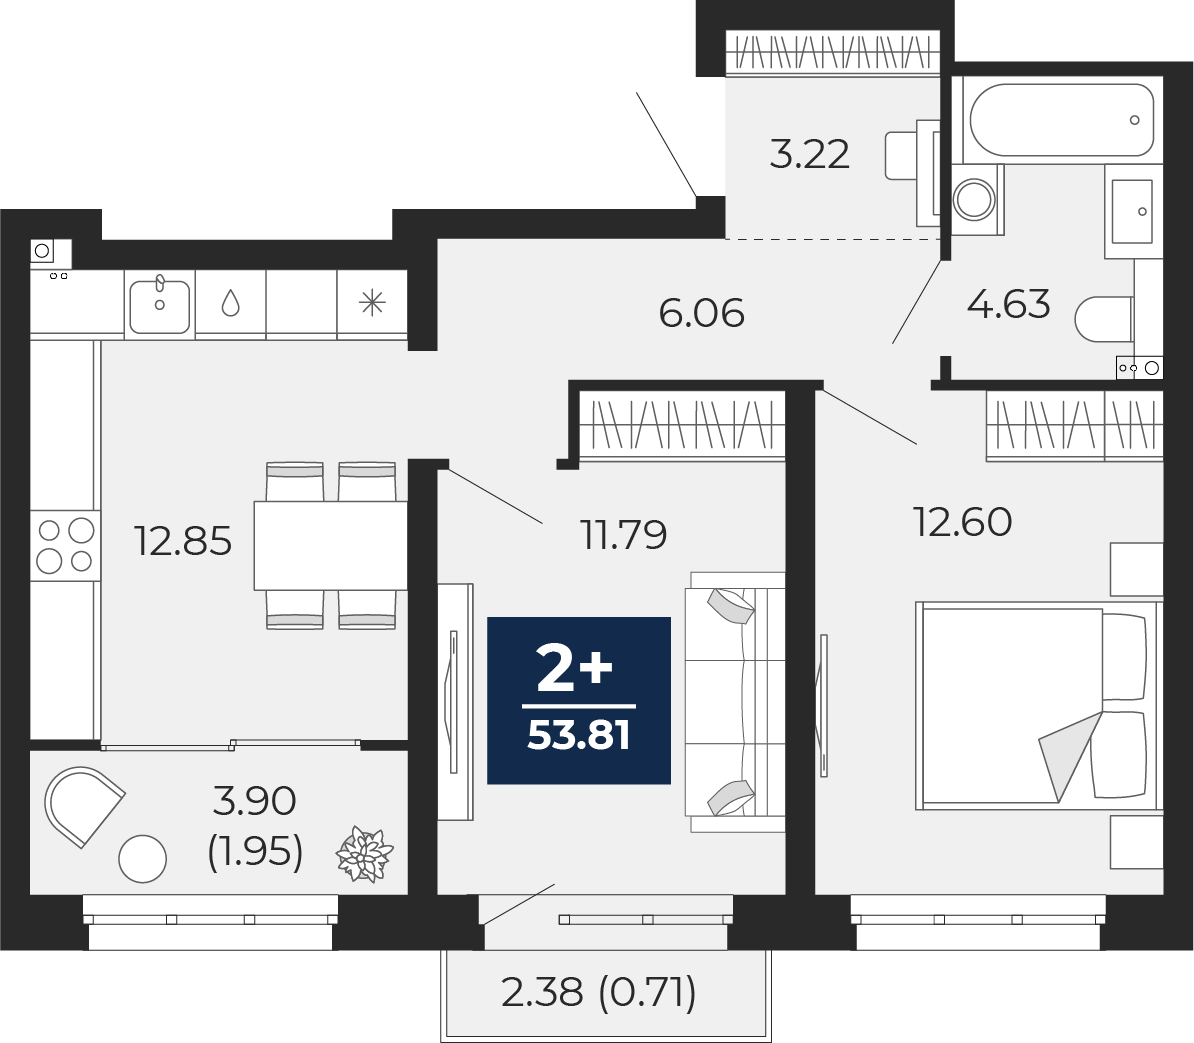 Квартира № 577, 2-комнатная, 53.81 кв. м, 7 этаж